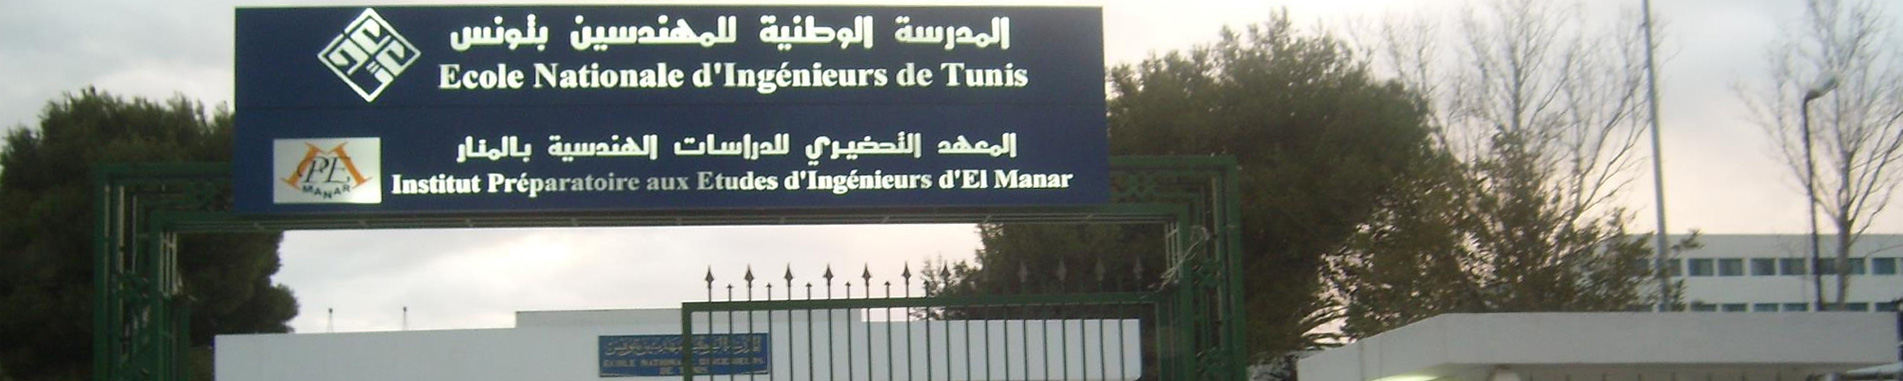 Ecole Nationale d'Ingénieurs de Tunis - ENIT